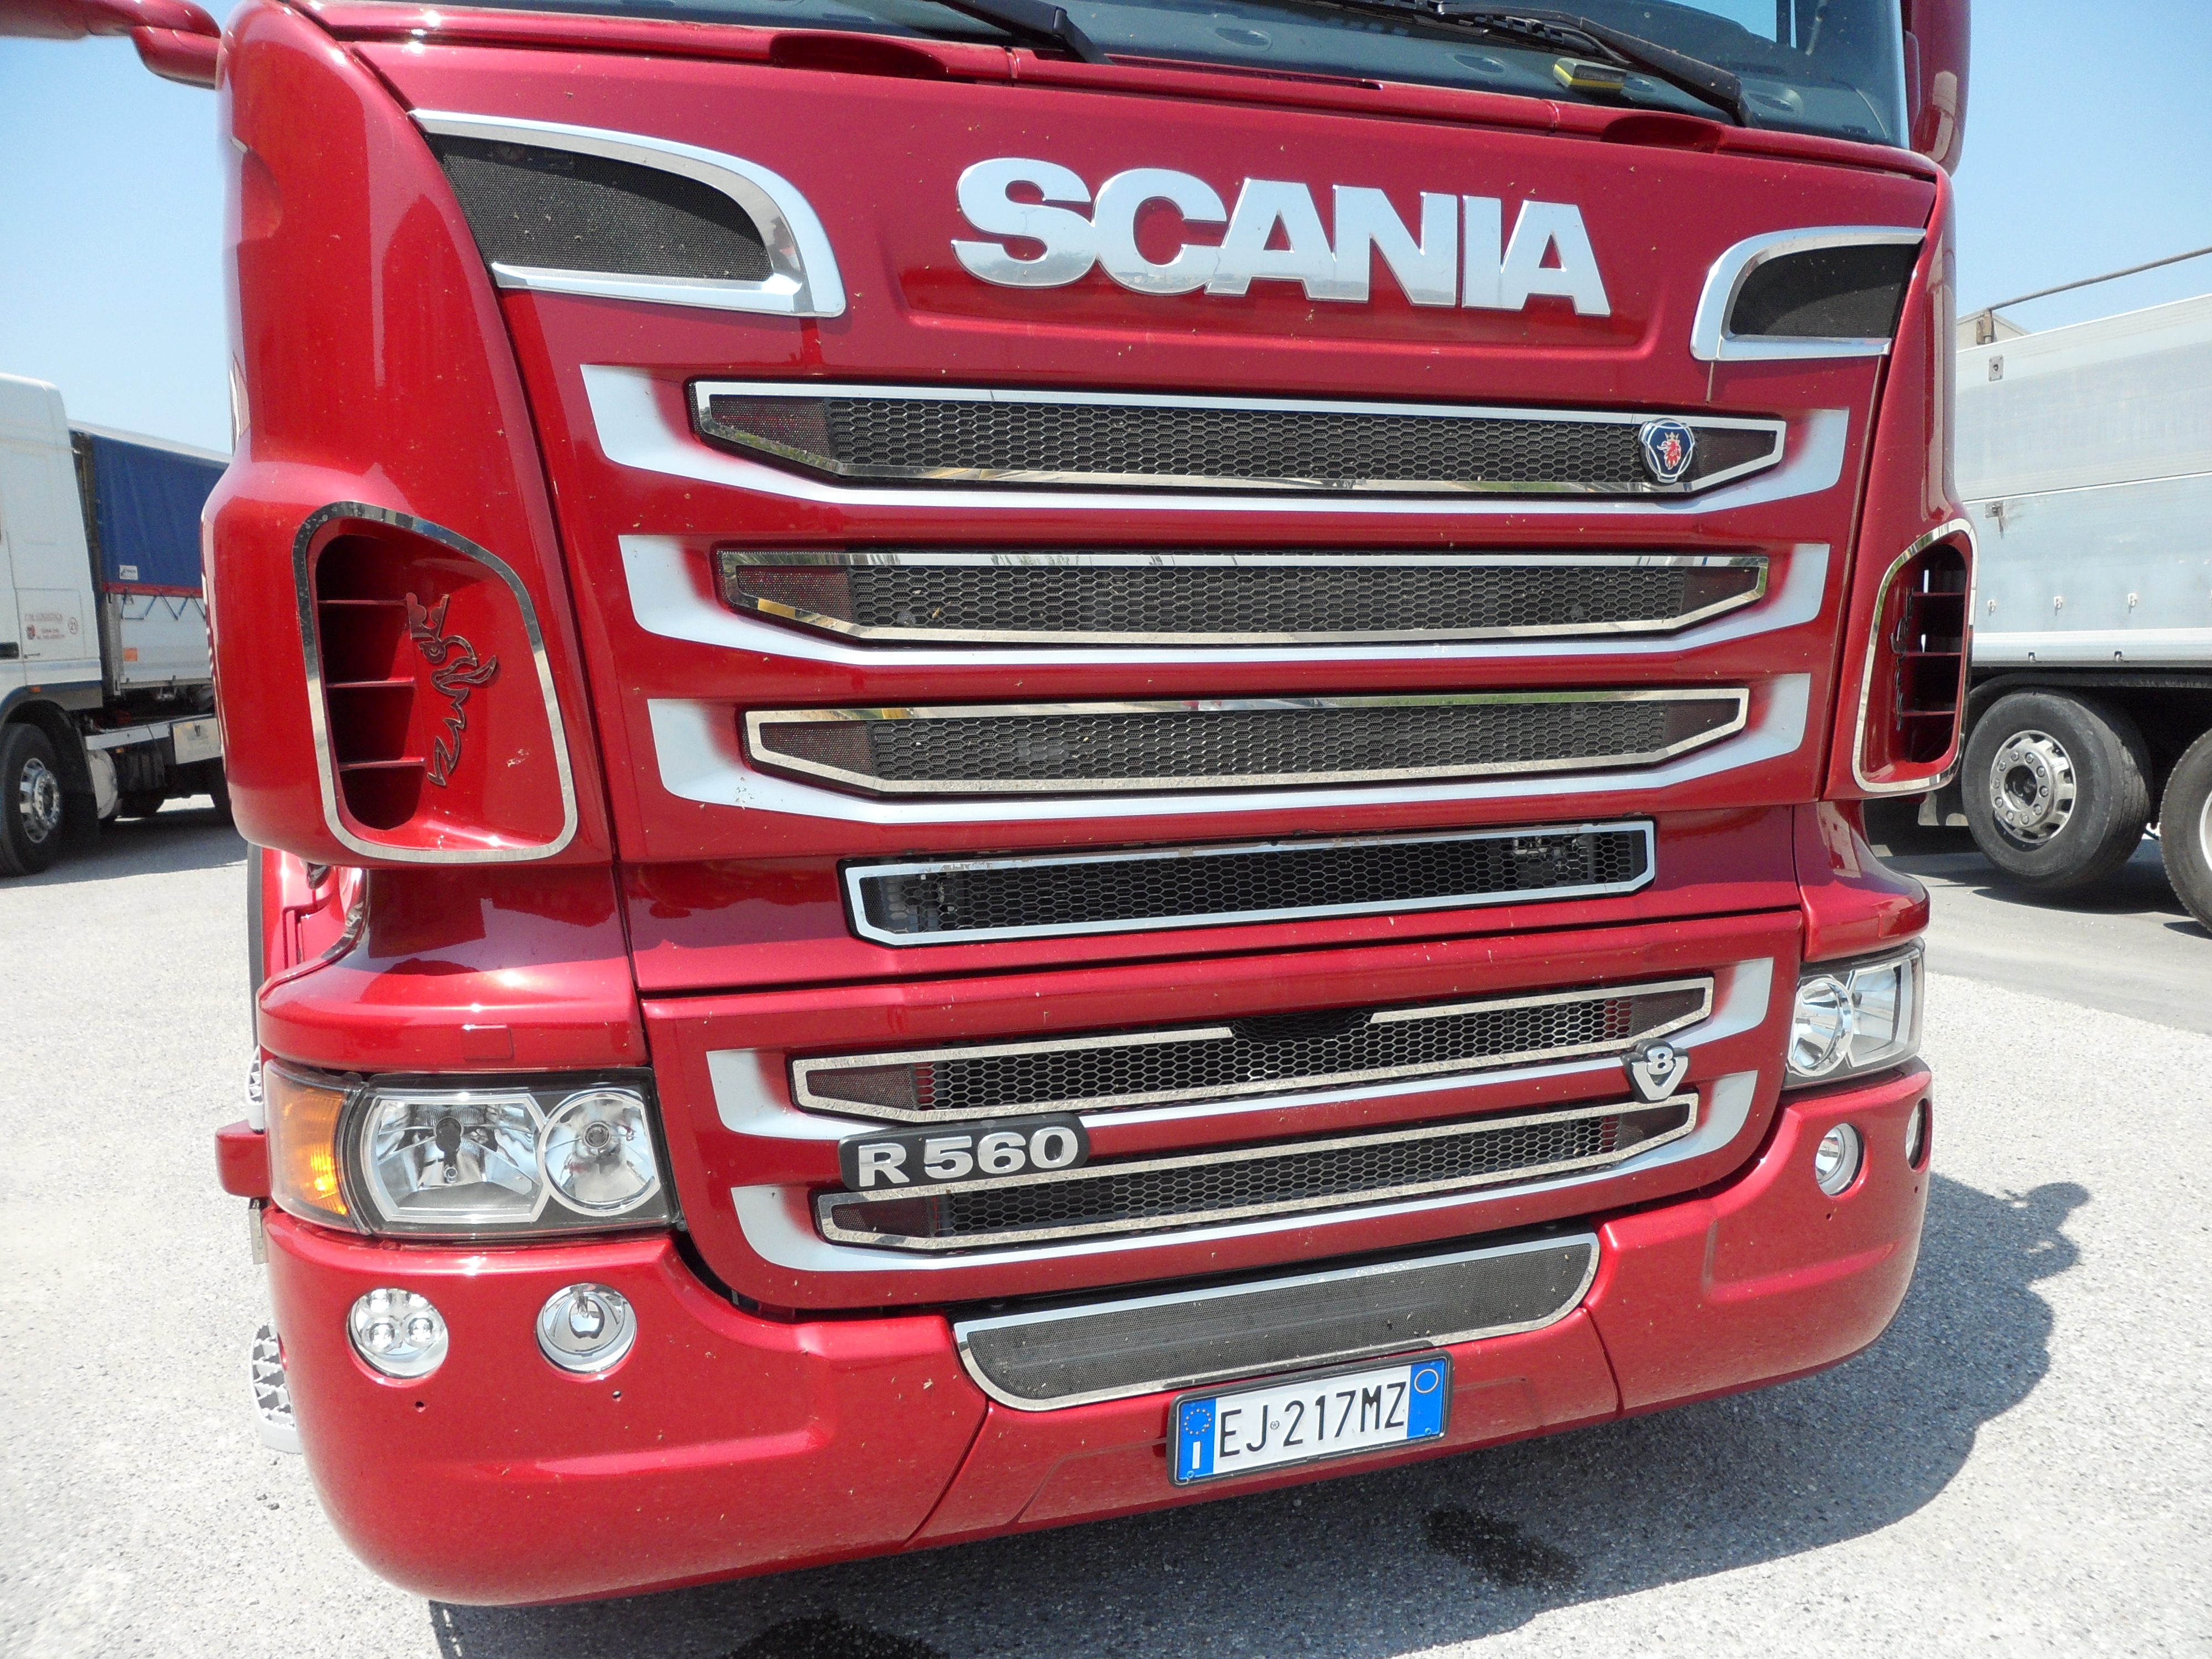 2 x acciaio INOX griglia anteriore Dash angolo decorazioni laser inciso grifoni per Scania R 2010/16 Trucks 